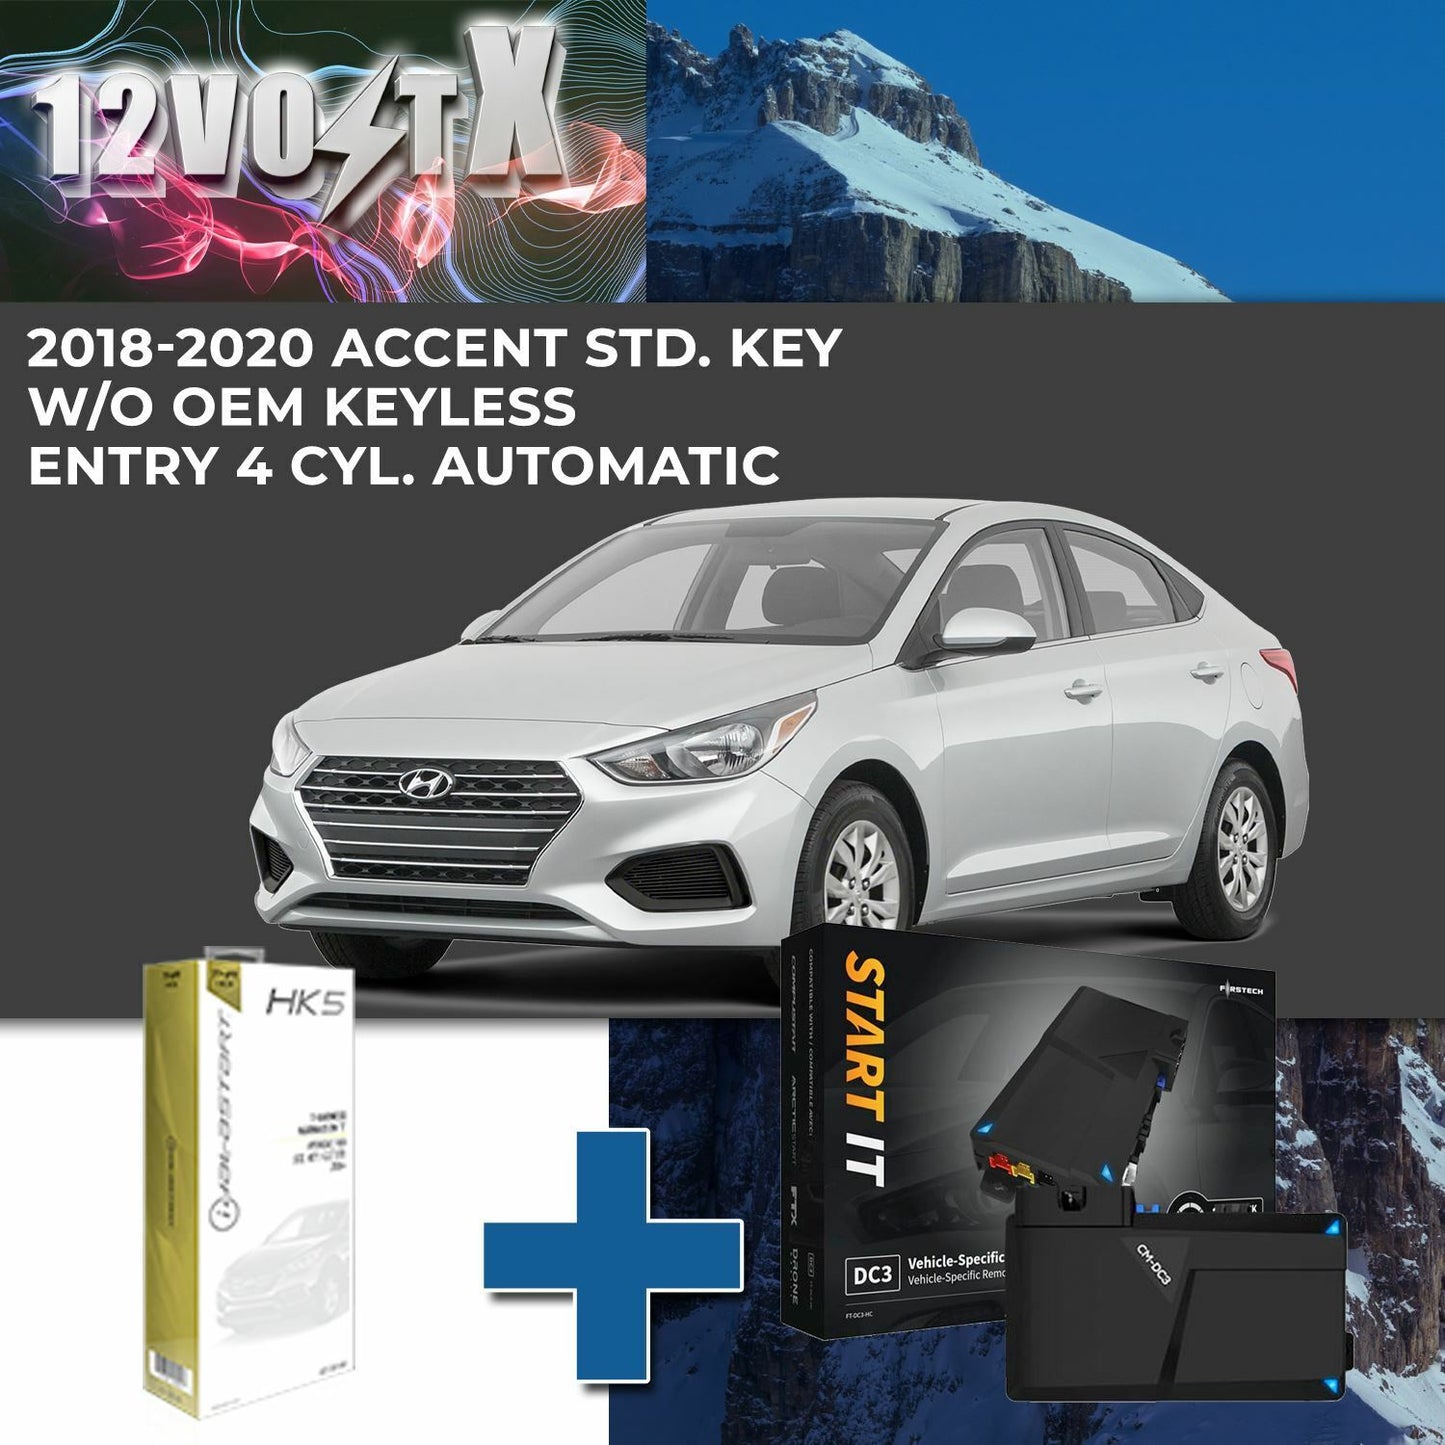 Remote Start System for 2018-2020 Hyundai Accent Std. Key w/o OEM Keyless Entry